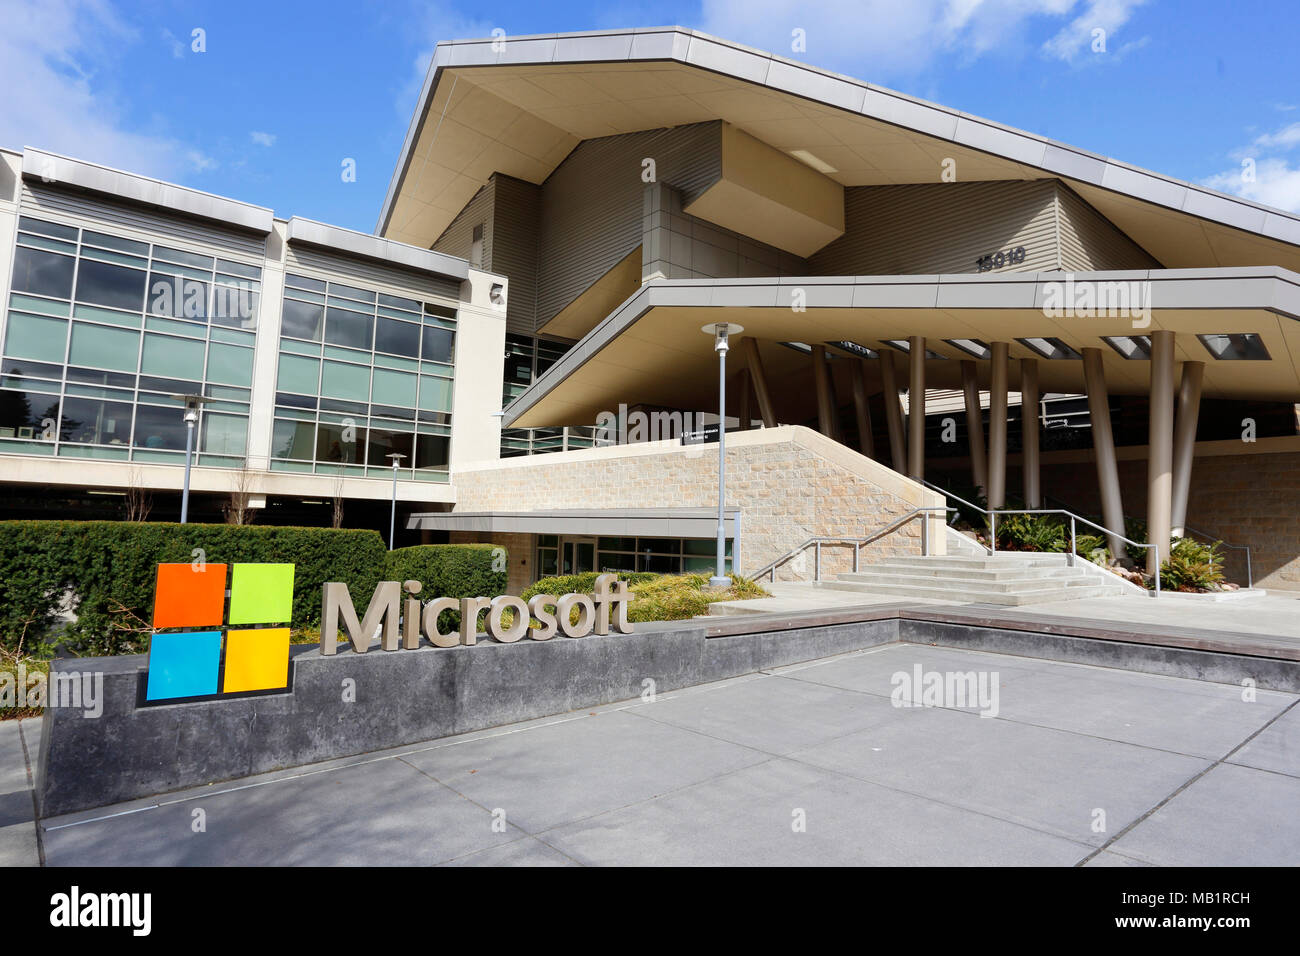 Microsoft Visitor Center nell'edificio 92 del campus principale di Microsoft, 15010 NE 36th St, Redmond, Washington. L'edificio ha uno stile del Nord Ovest Pacifico Foto Stock